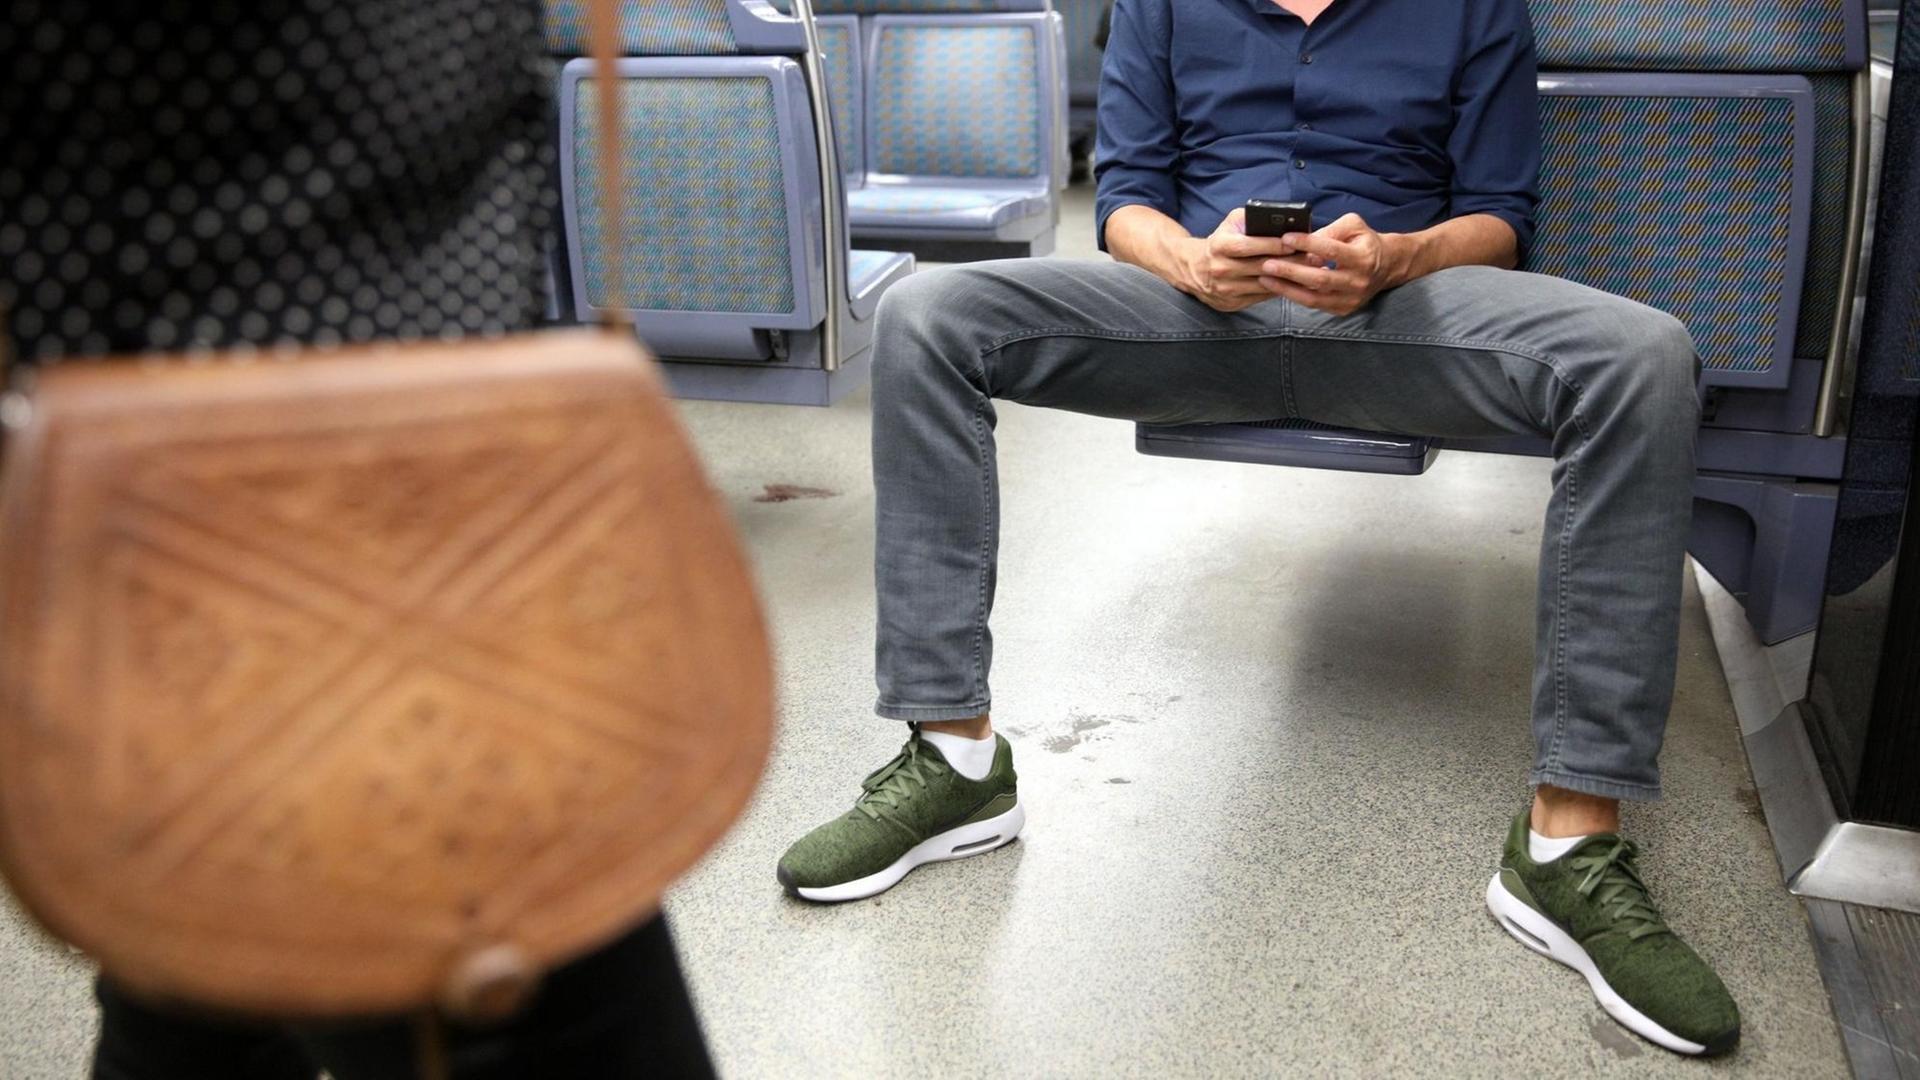 ©PHOTOPQR/LE PARISIEN//OLIVIER ARANDEL ; PARIS 15/06/2017 Le "manspreading" désigne la manière de s'asseoir les jambes très écartées dans les transports publics. manspreading in Paris, France, transports Foto: Lp/Olivier Arandel/MAXPPP/dpa |